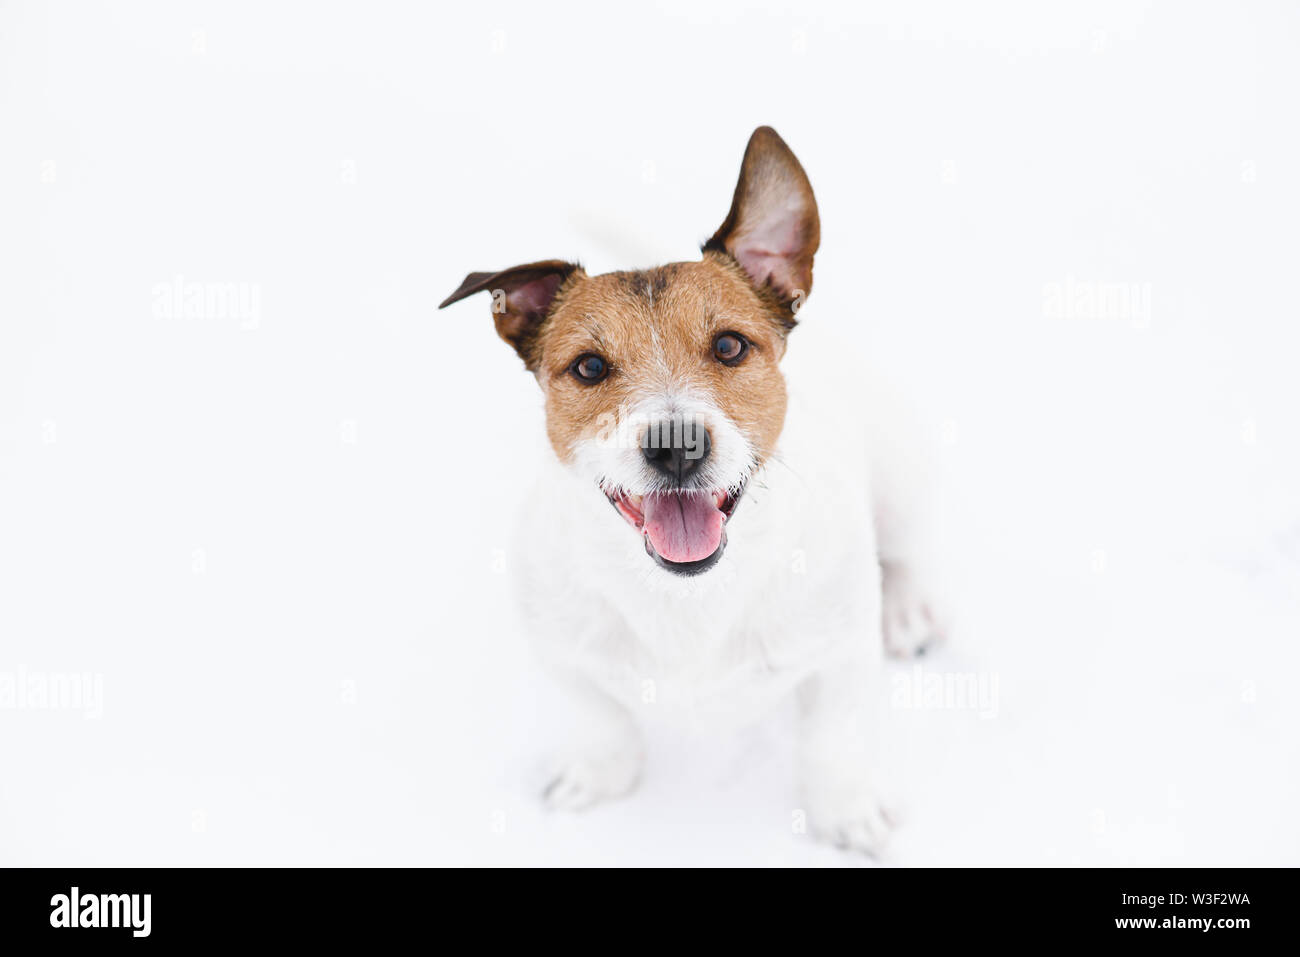 Cute cane seduto sul bianco della neve cercando con curiosità e attenzione al proprietario Foto Stock